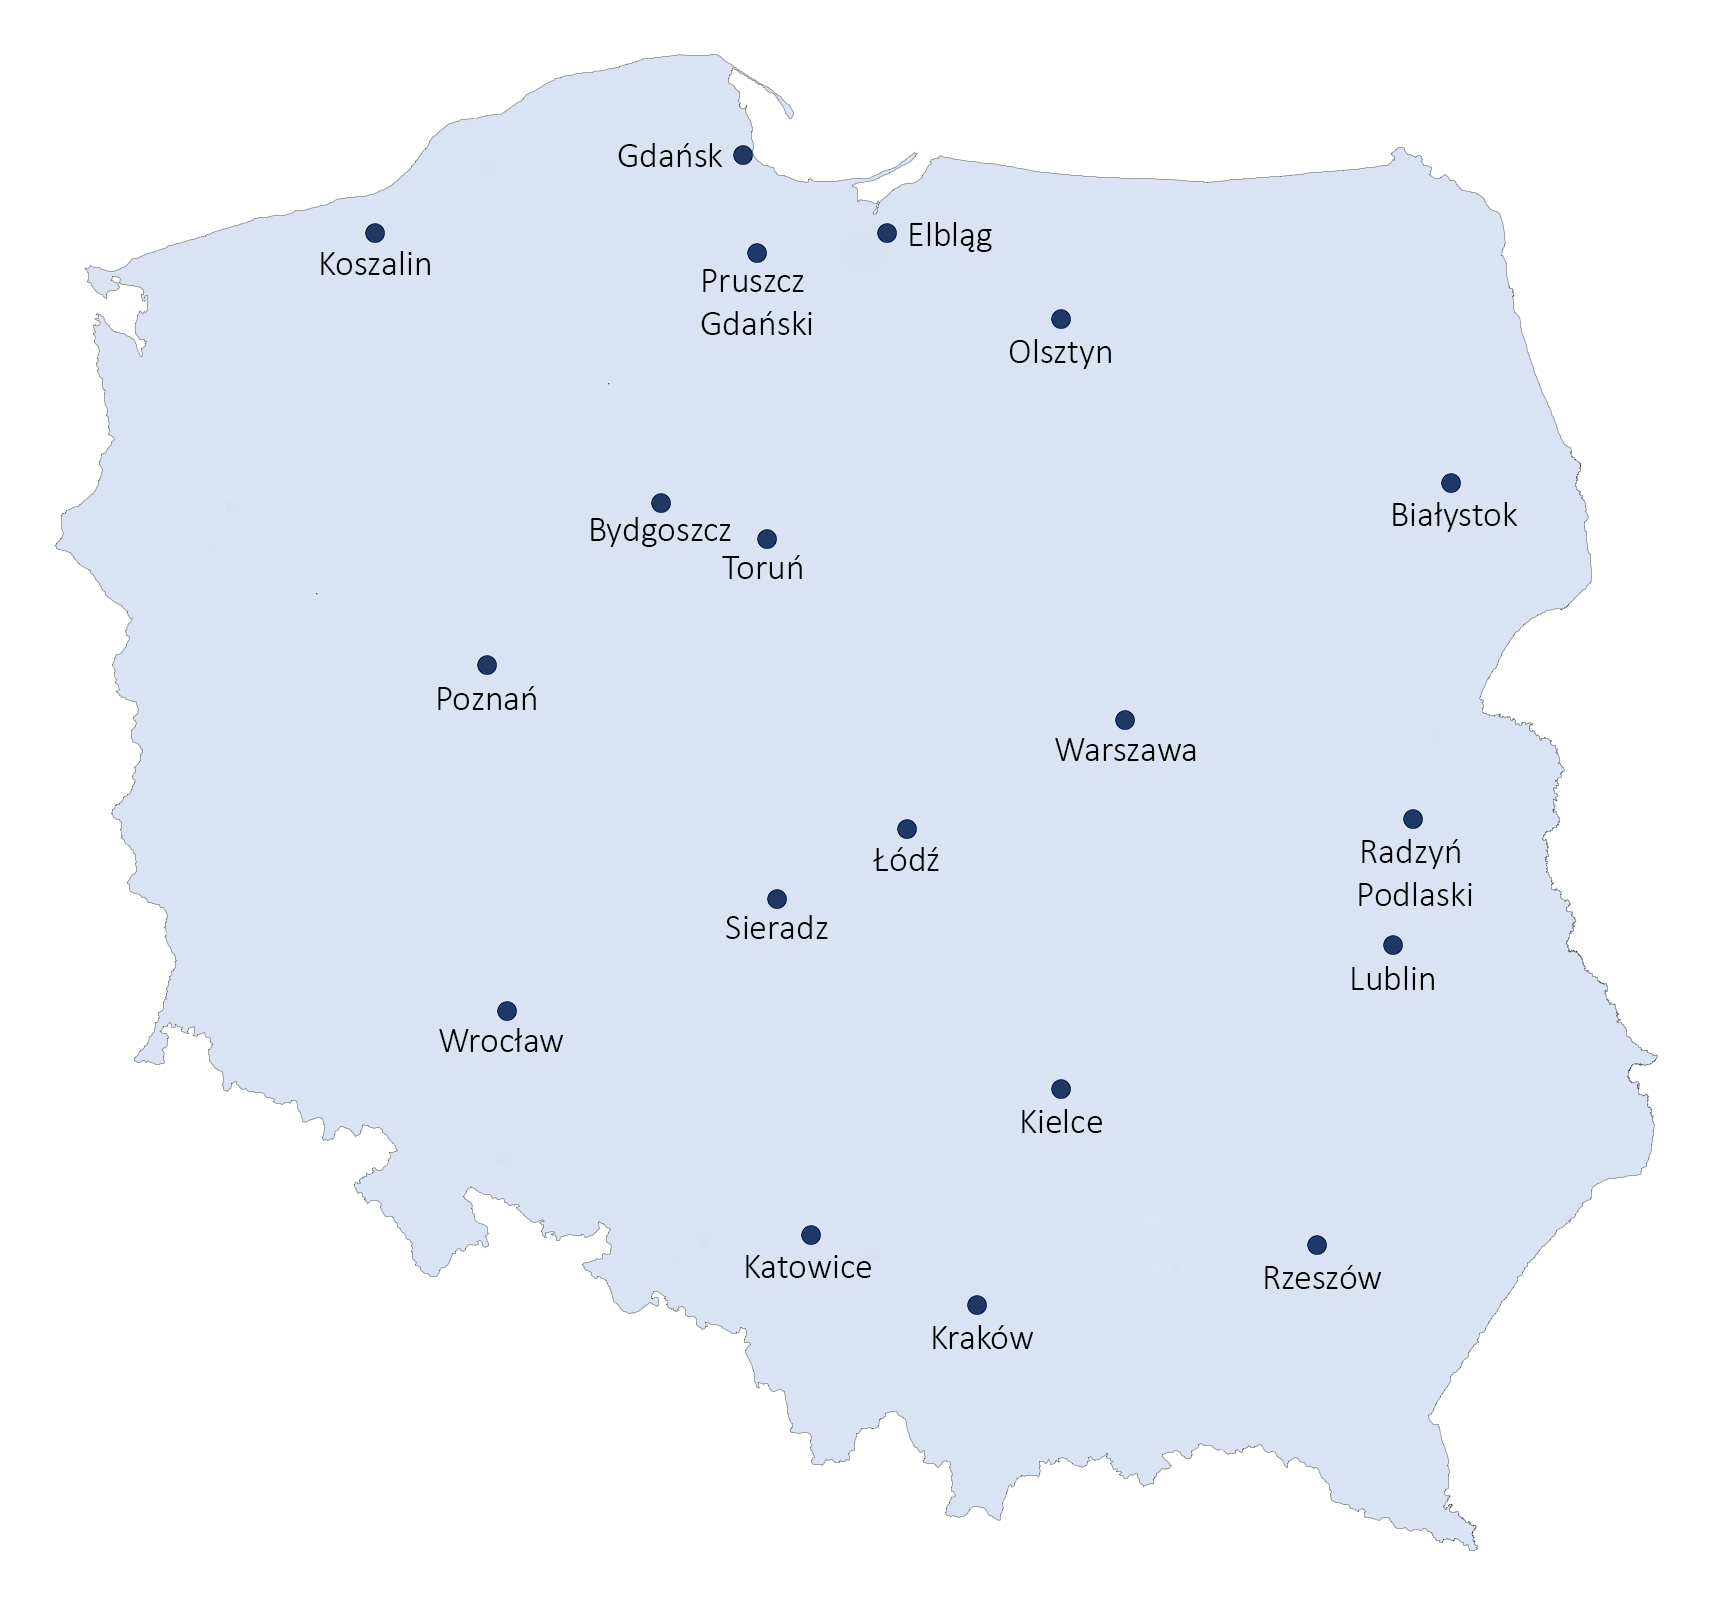 Mapa Polski z zaznaczonymi miastami gdzie zlokalizowane są jednostki laboratoryjne